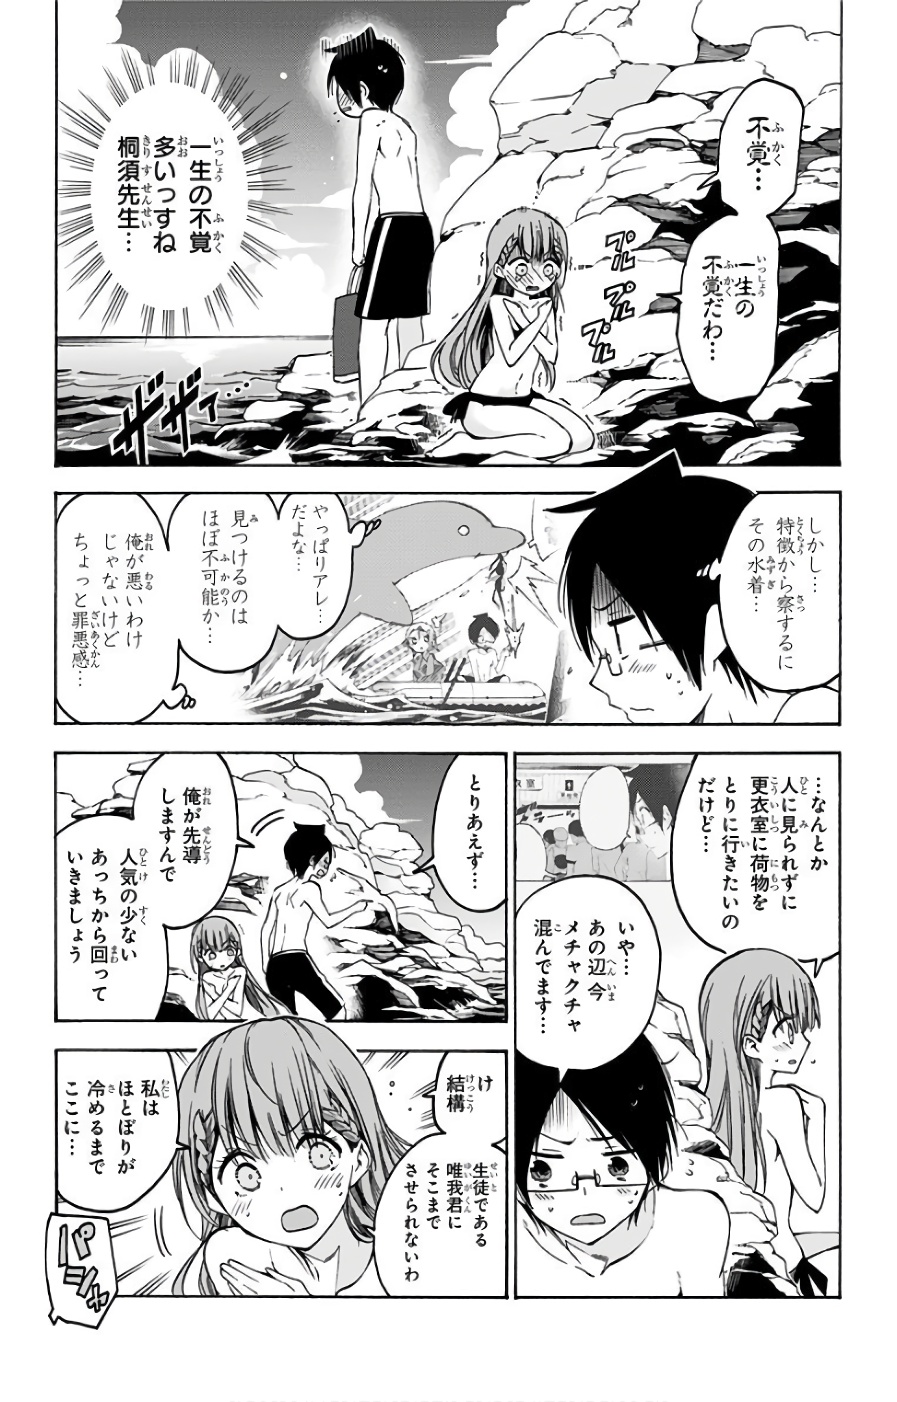 Bokutachi wa Benkyou ga Dekinai - Chapter 49 - Page 3